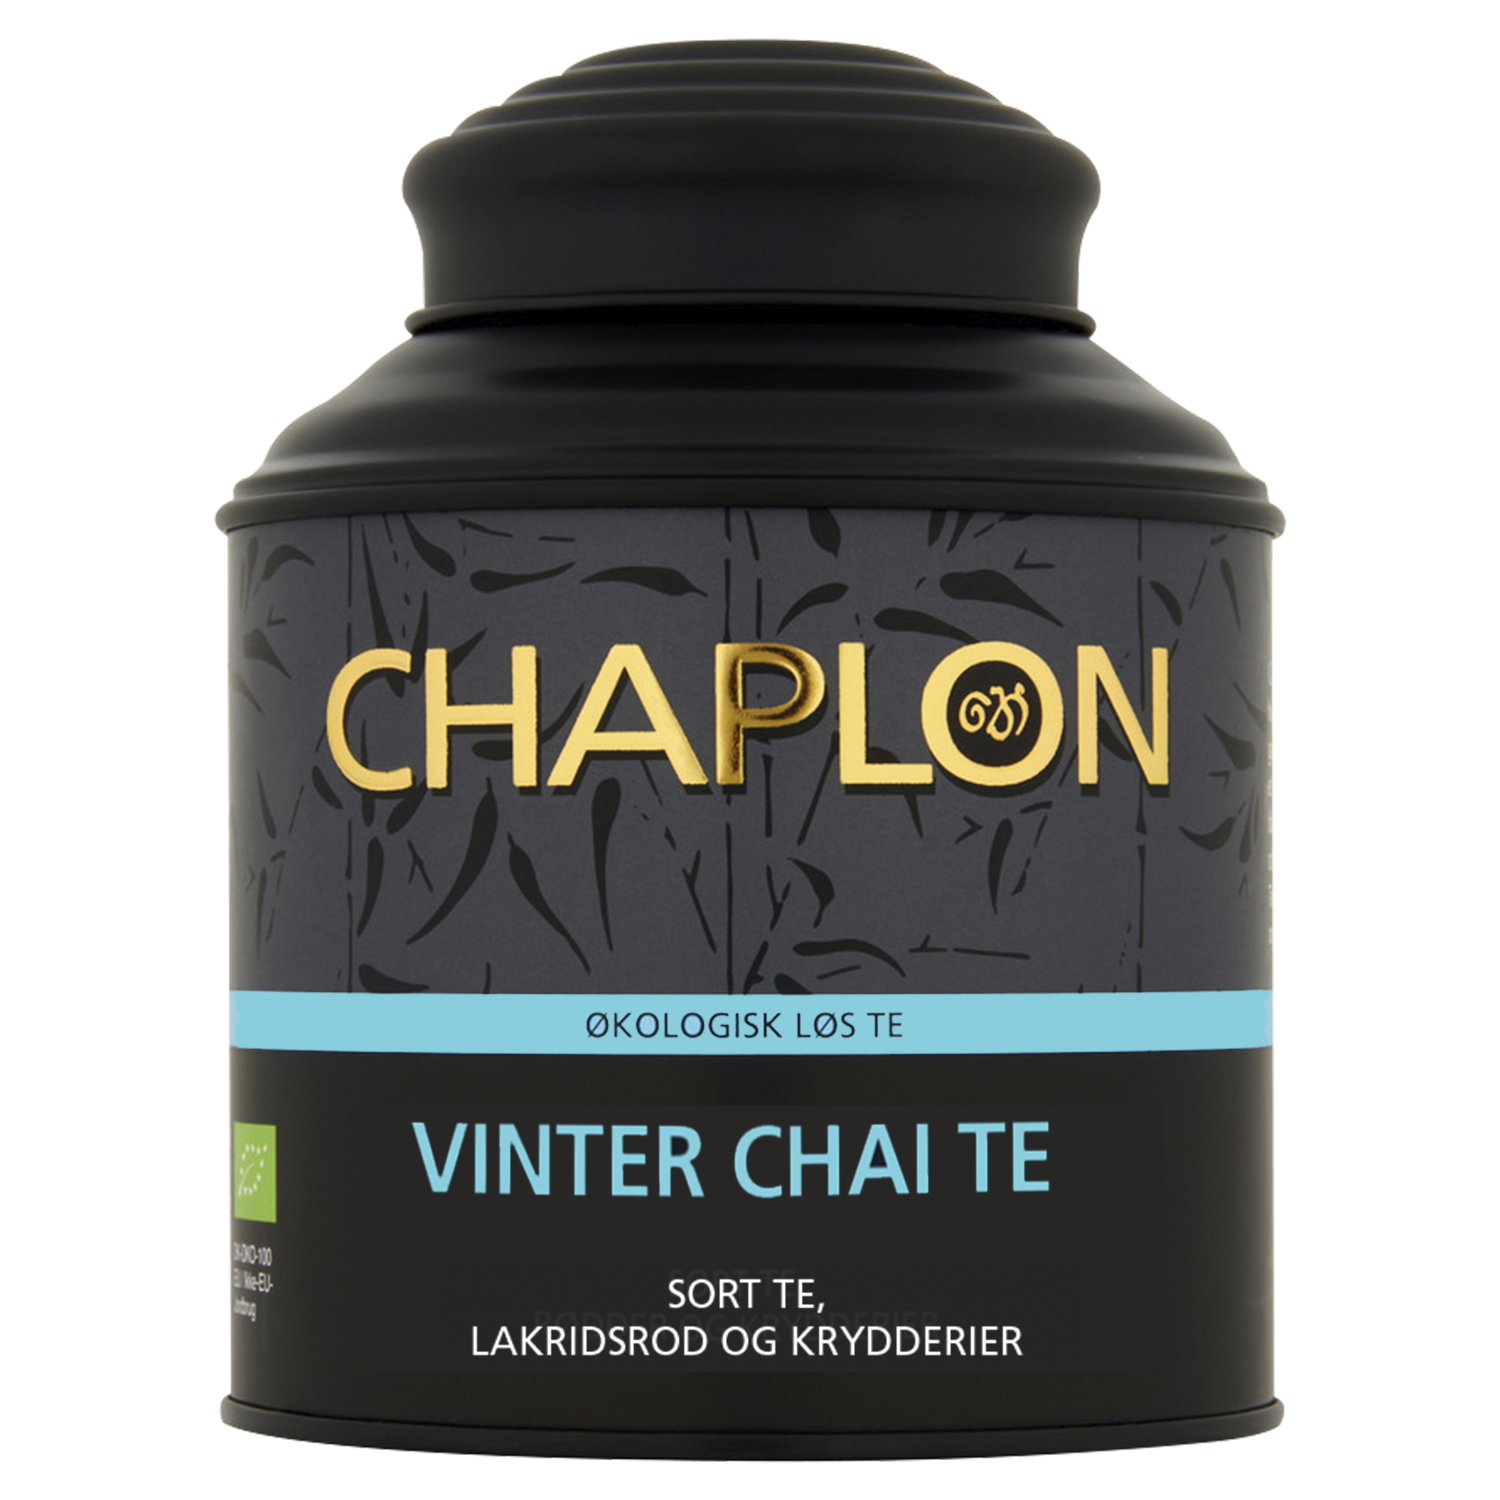 Chaplon Vinter chai te økologisk 160g